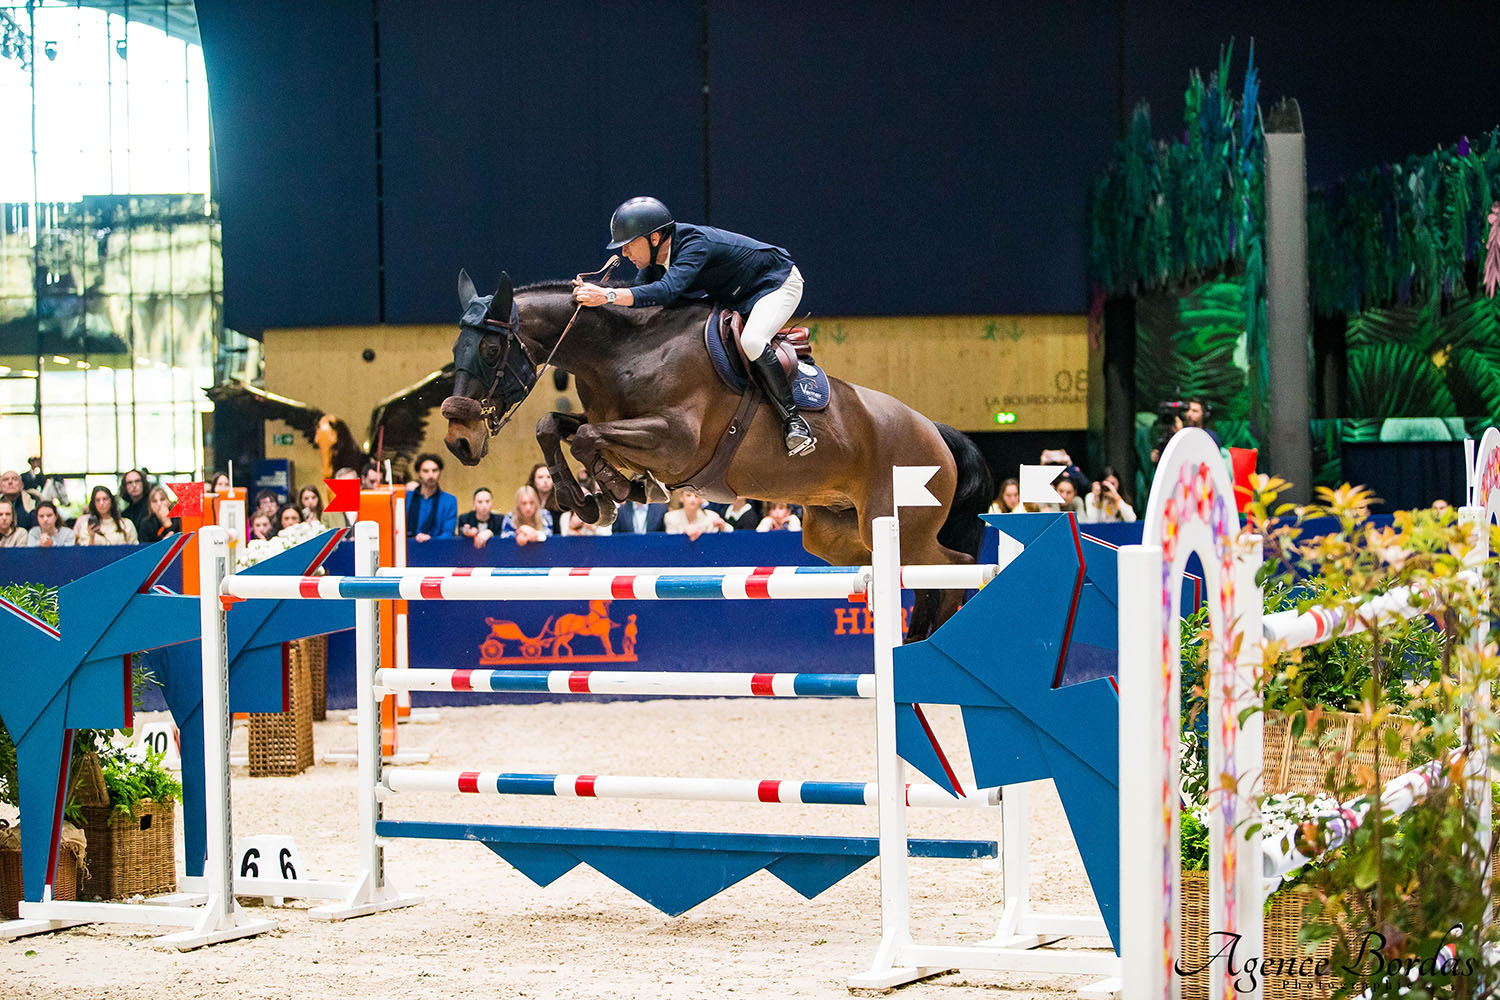 Wilm Vermeir: "Ik kan alleen maar gelukkig zijn dat mijn paard zo gemotiveerd is!"